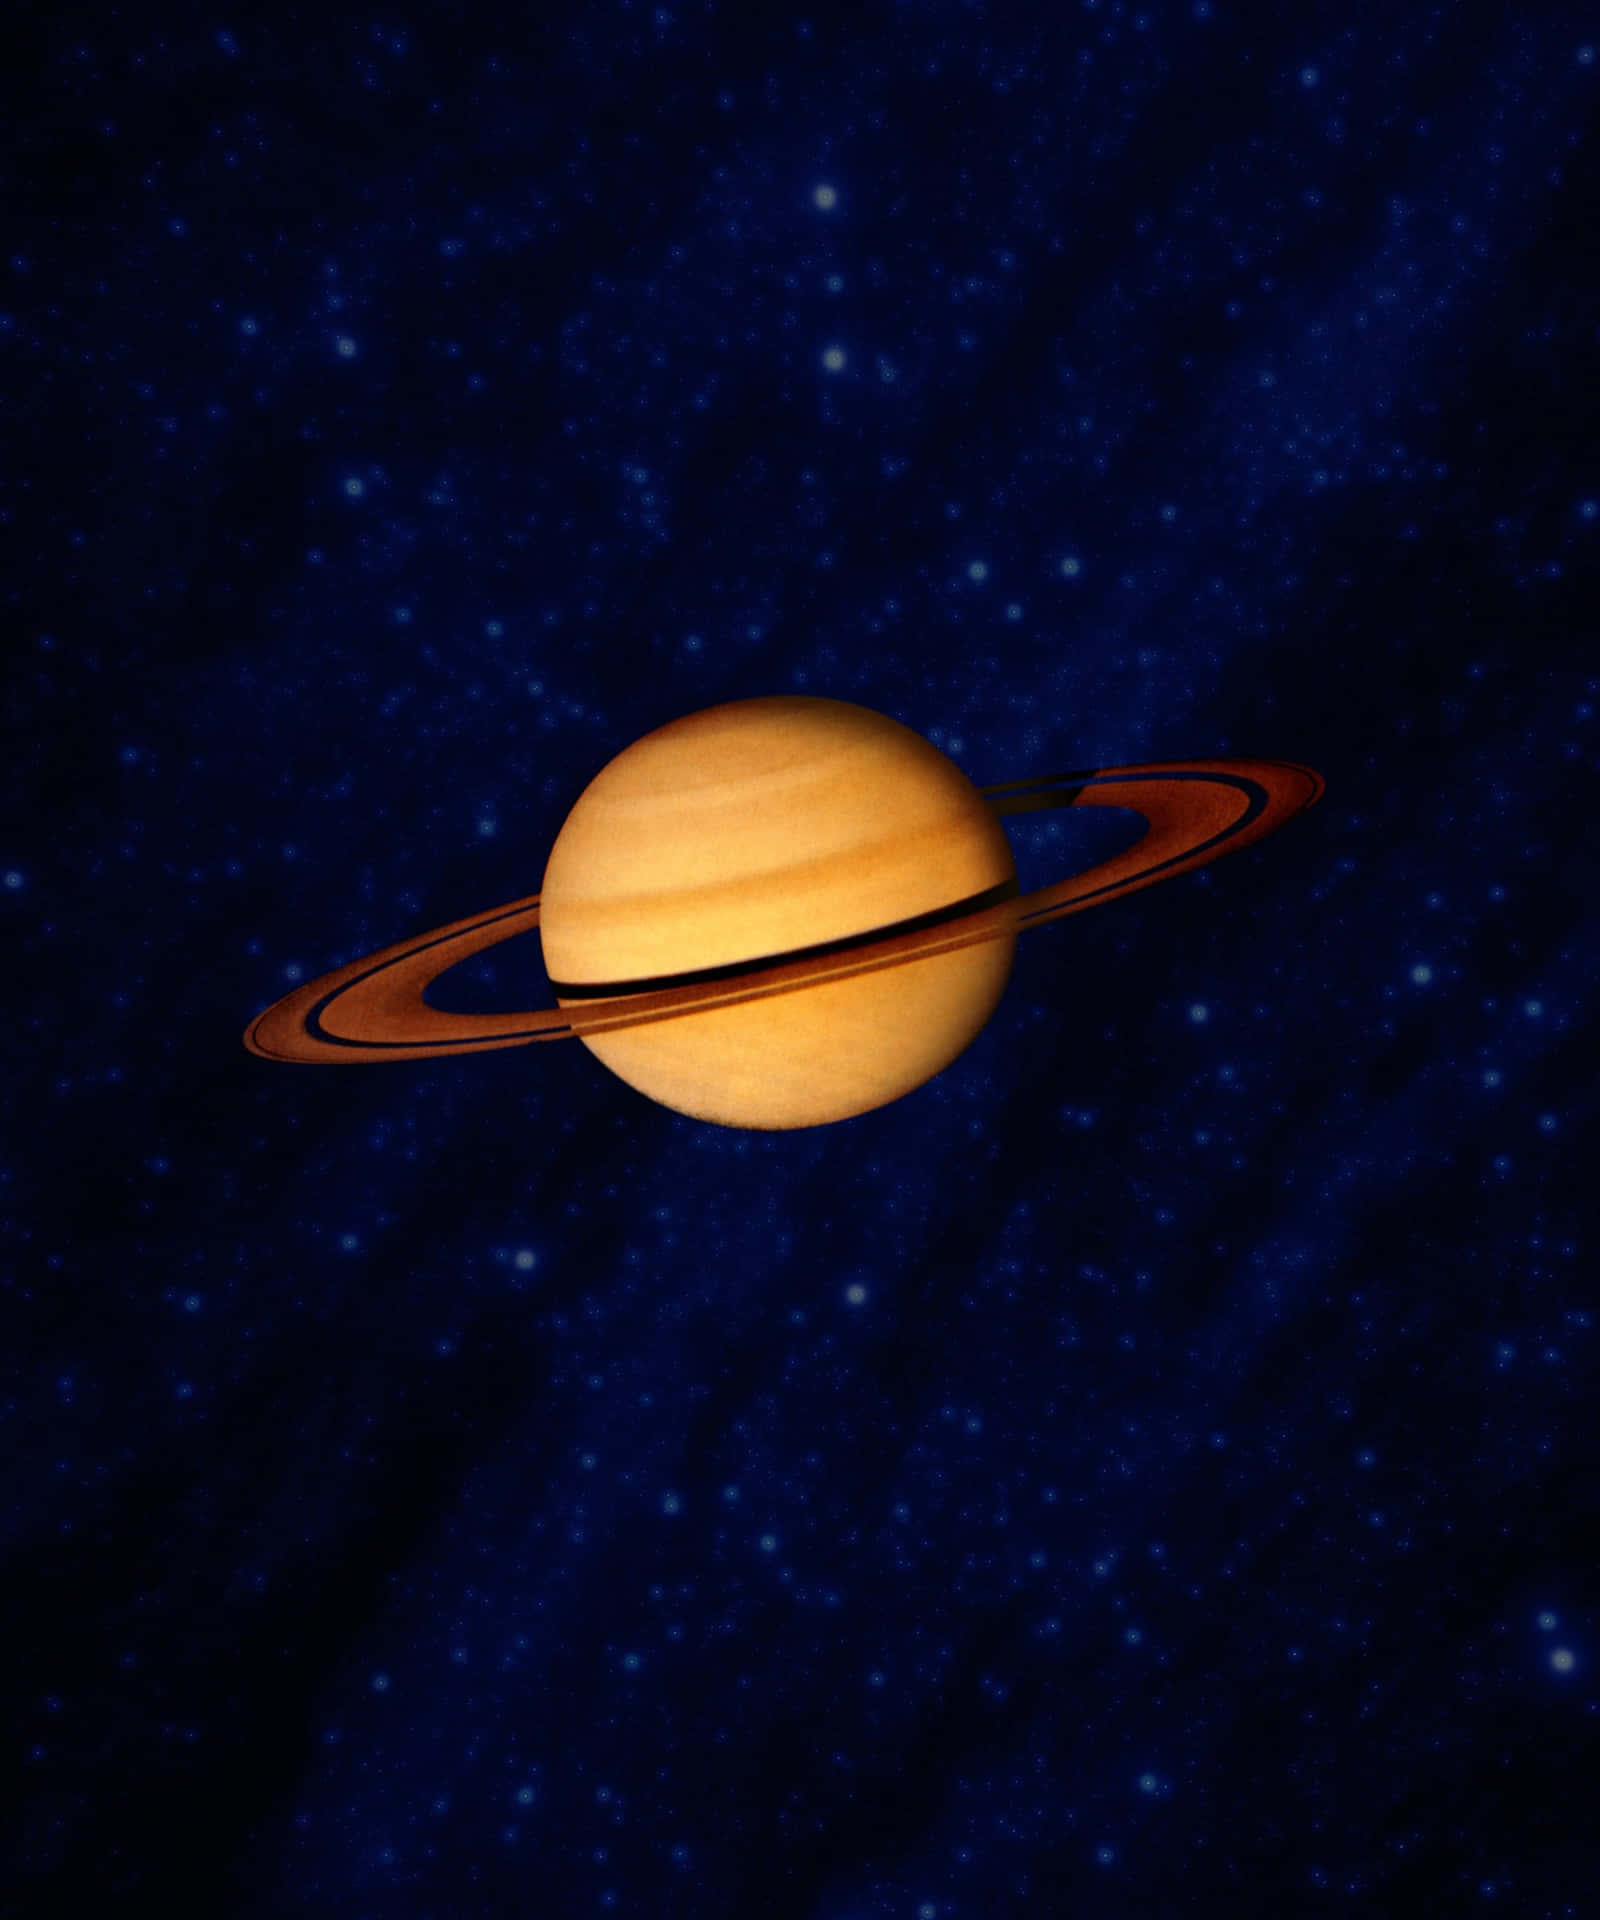 Saturnusoch Dess Ringar Står I Imponerande Klarhet Mot Det Svarta Tomrummet I Rymden.